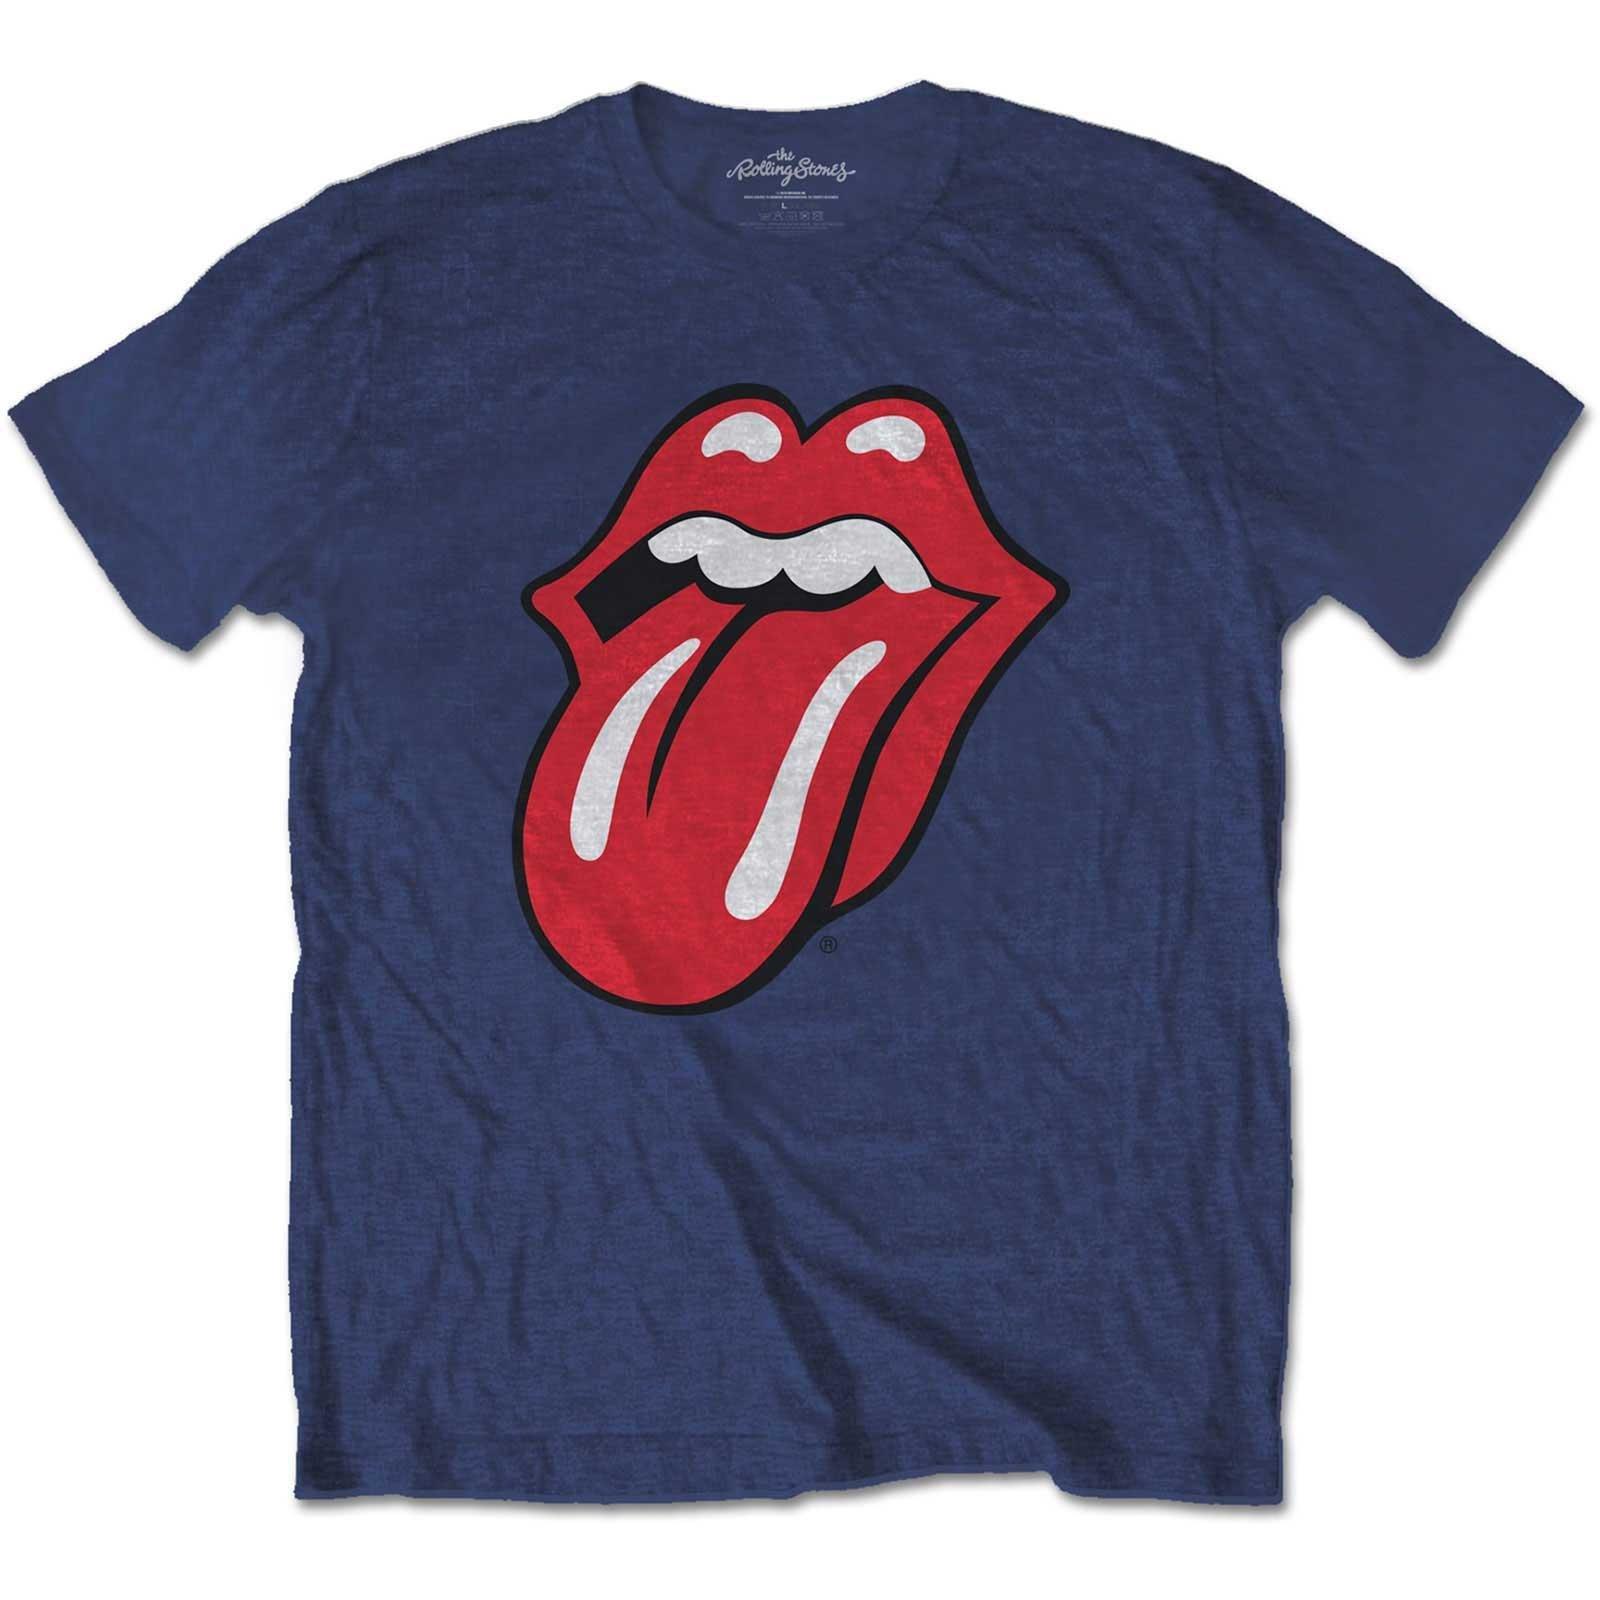 Classic Tshirt Jungen Marine 104 von The Rolling Stones